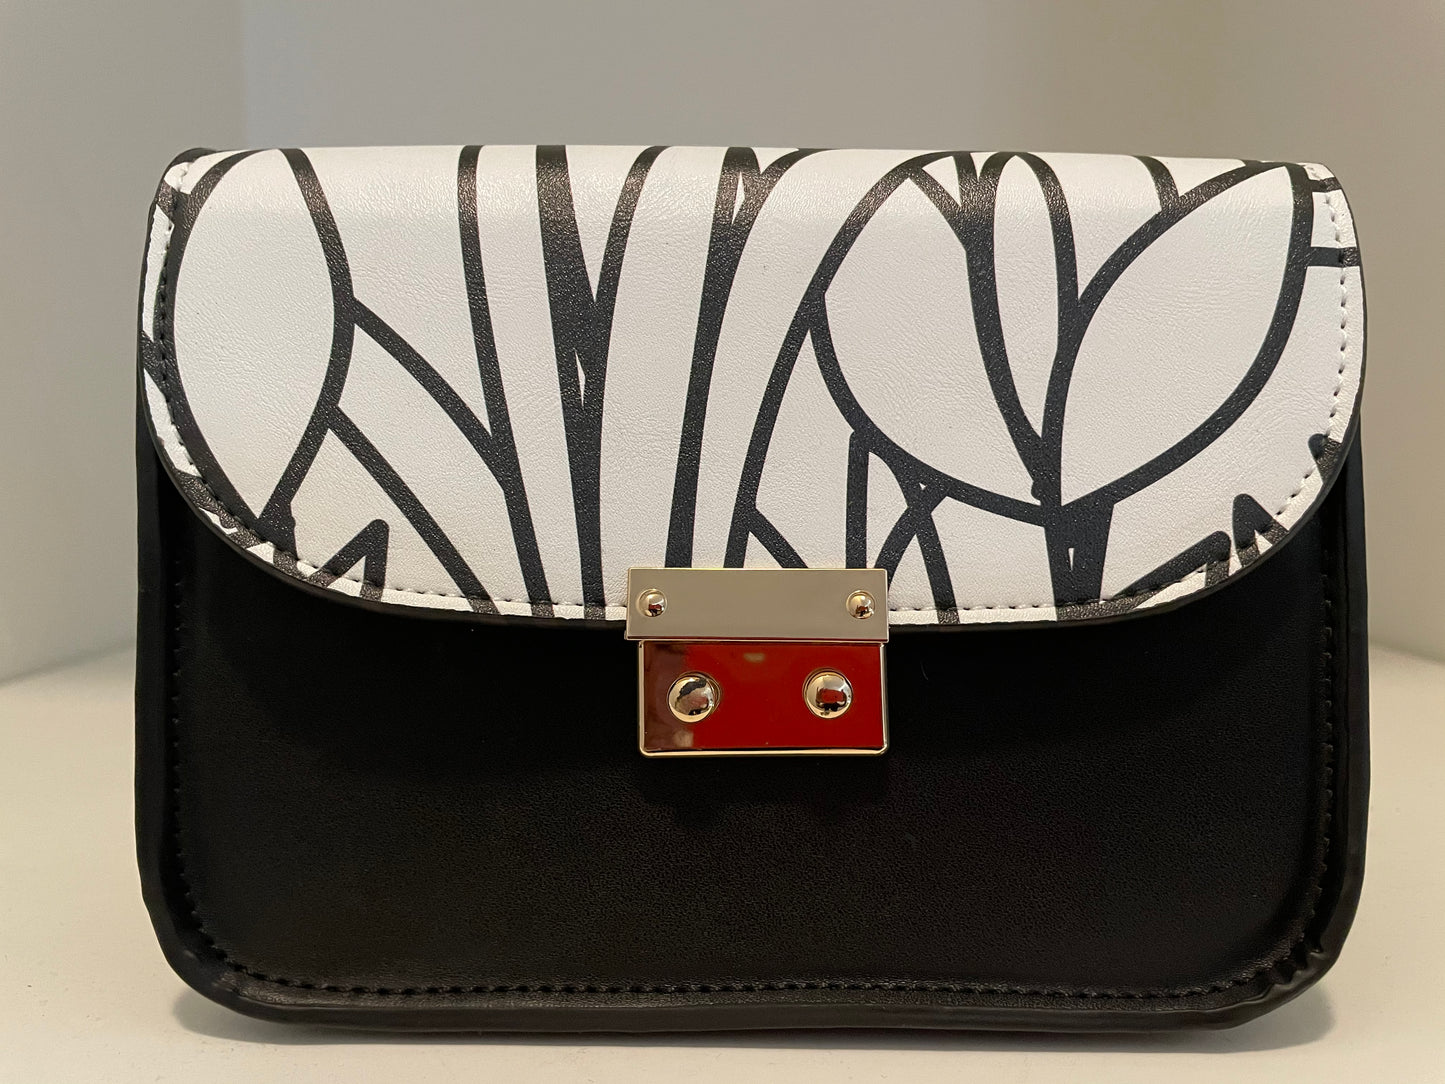 Custom Order - AMMA JO Nina Crossbody Bag - La Fleur Blanc